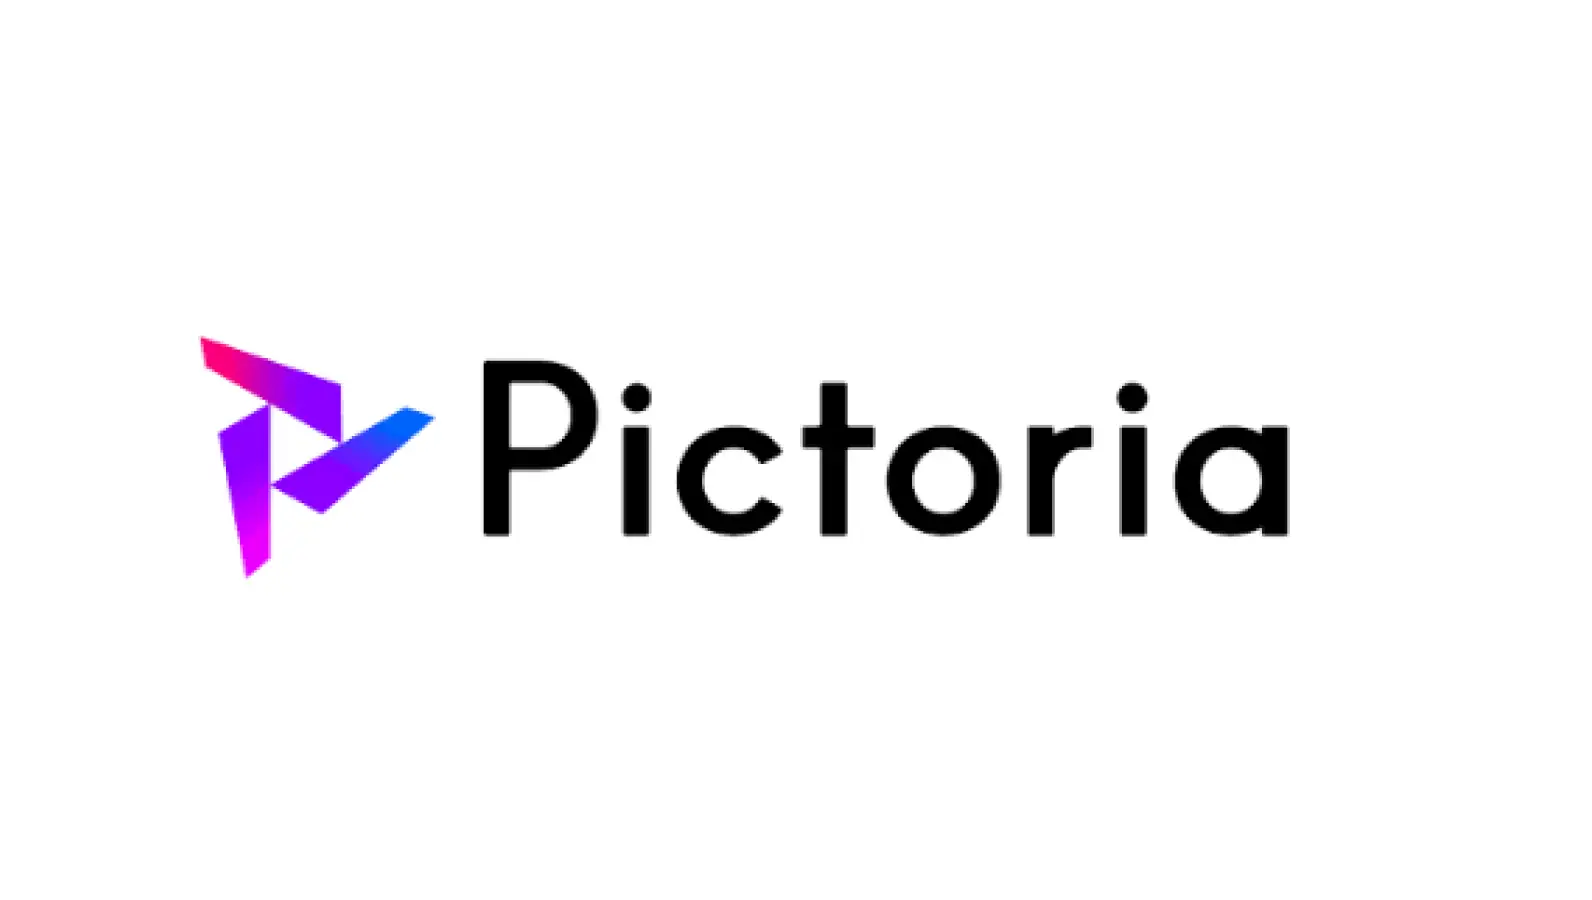 バーチャルYouTuber"斗和キセキ"をプロデュースする株式会社Pictoria、１億円の資金調達を実施の画像